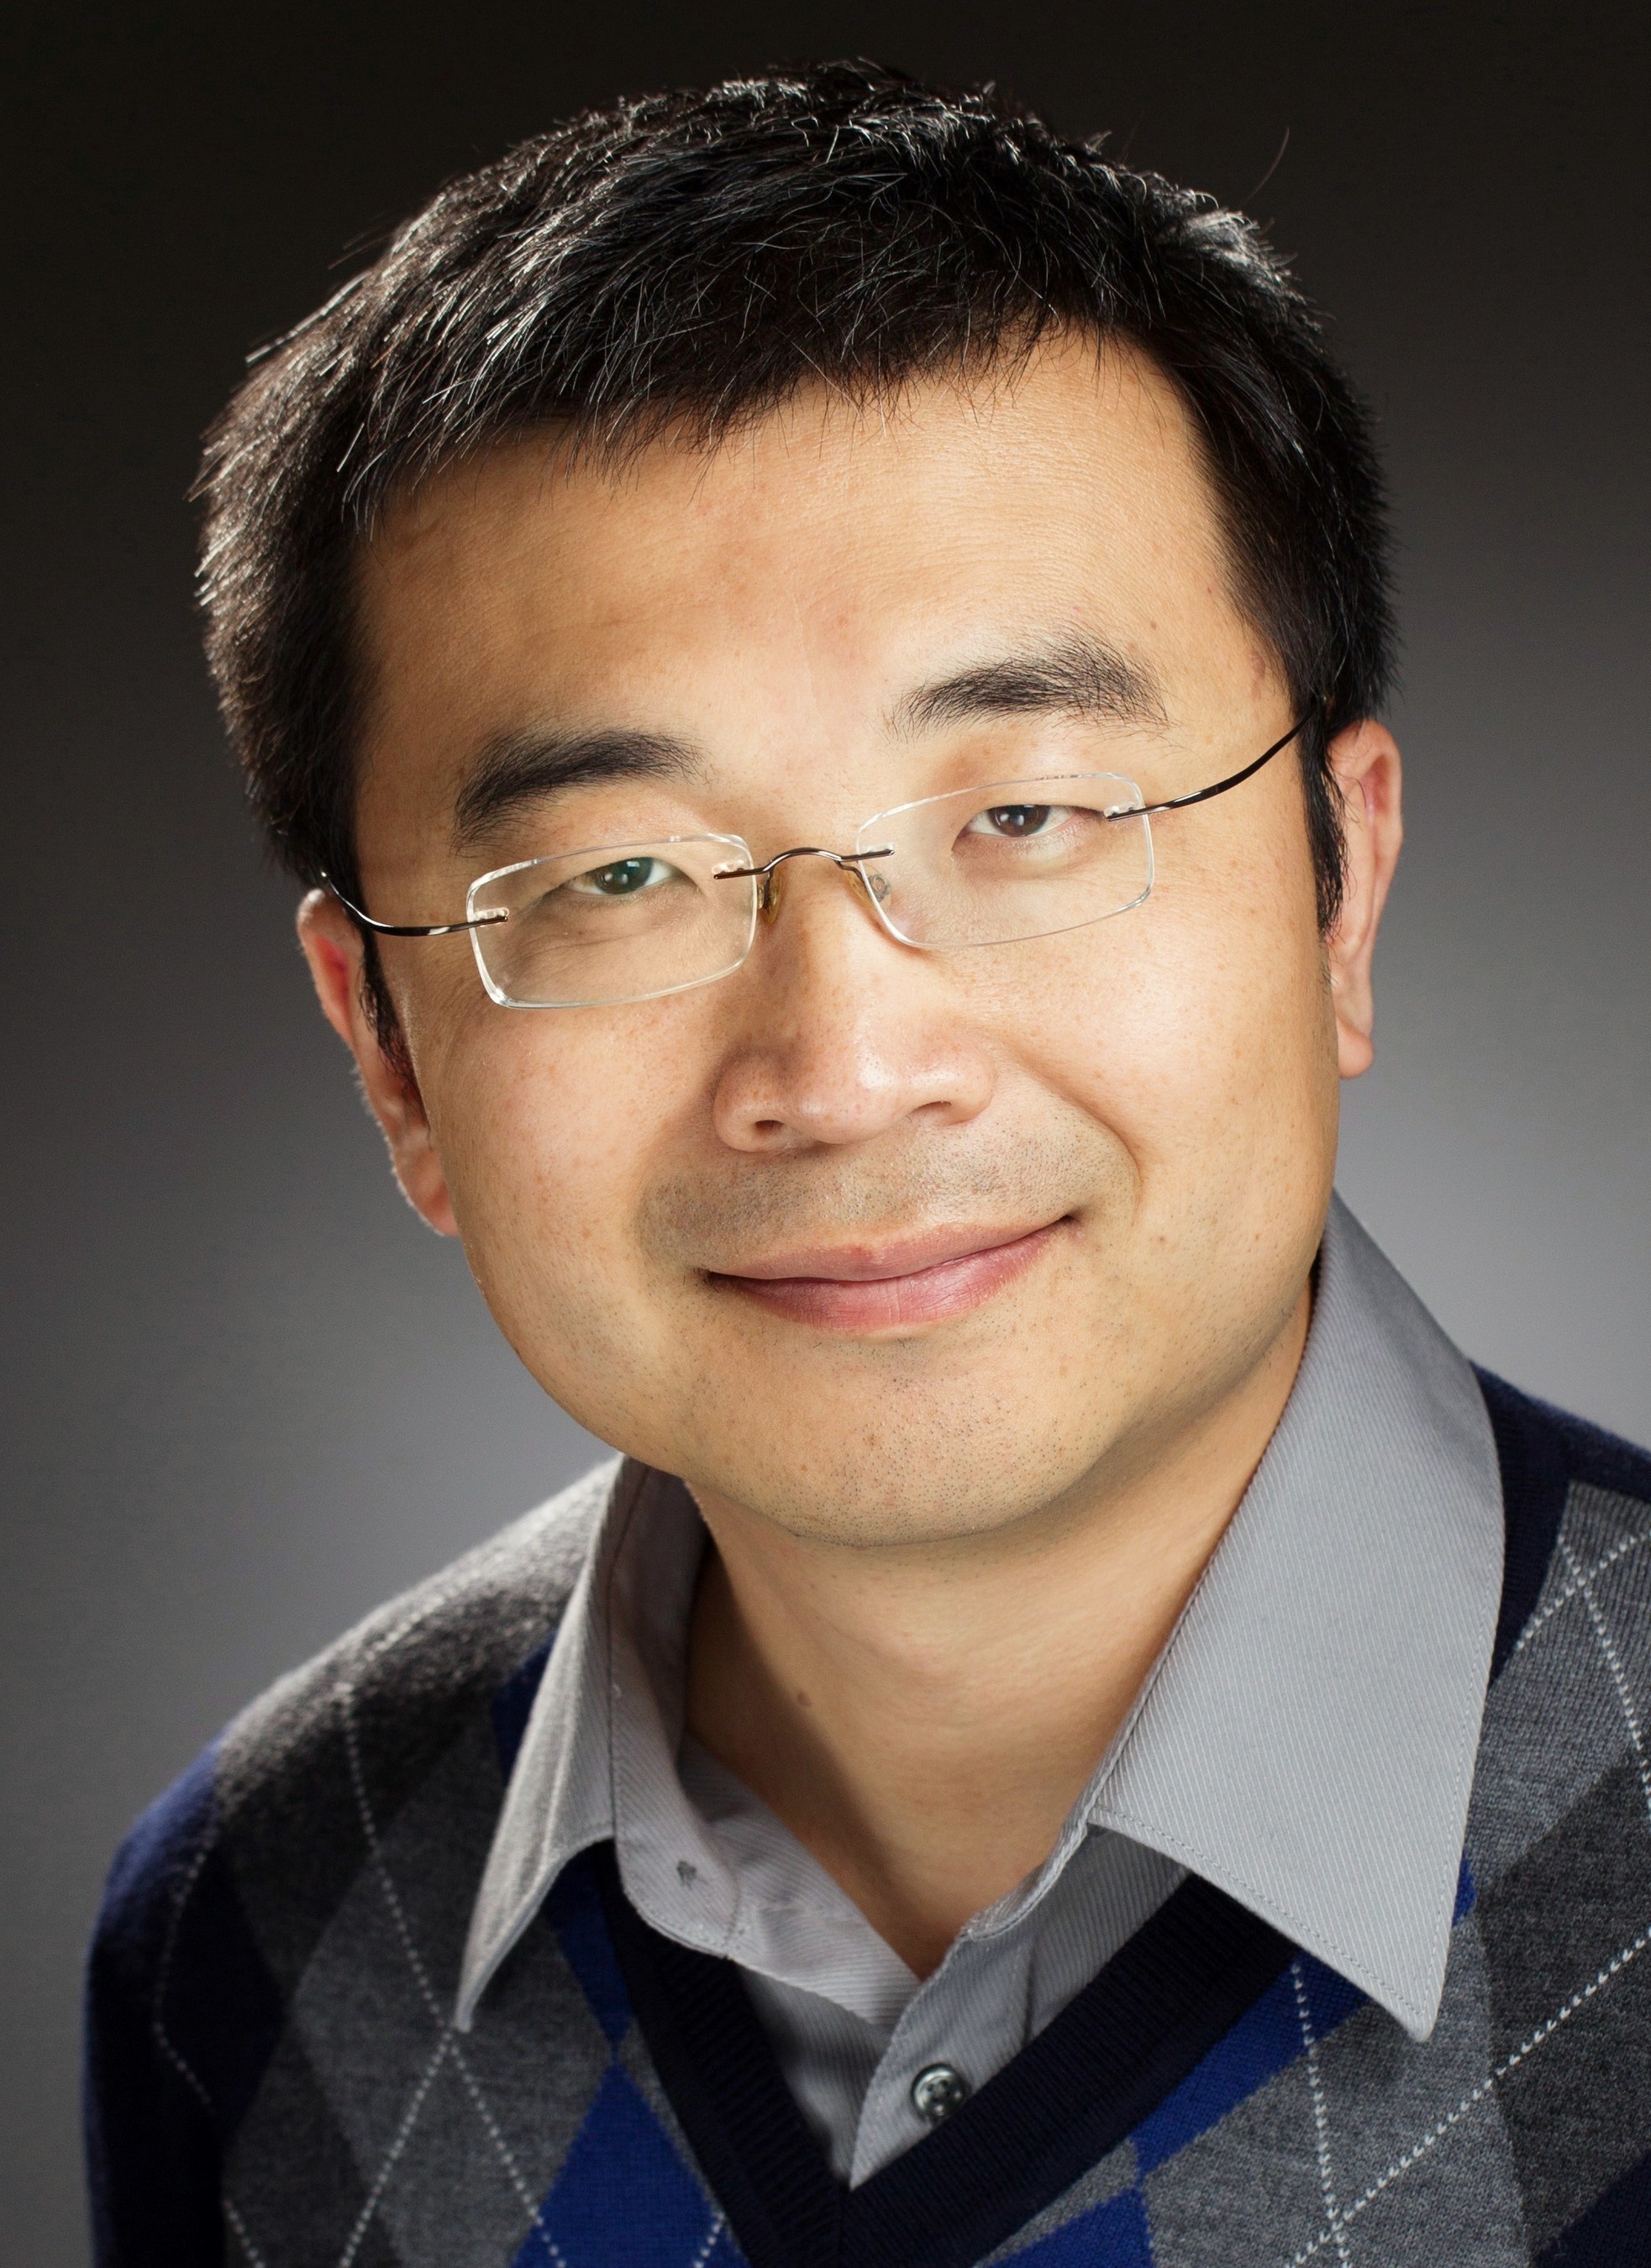 Tony Zhao, Founder and CEO of Agora.io